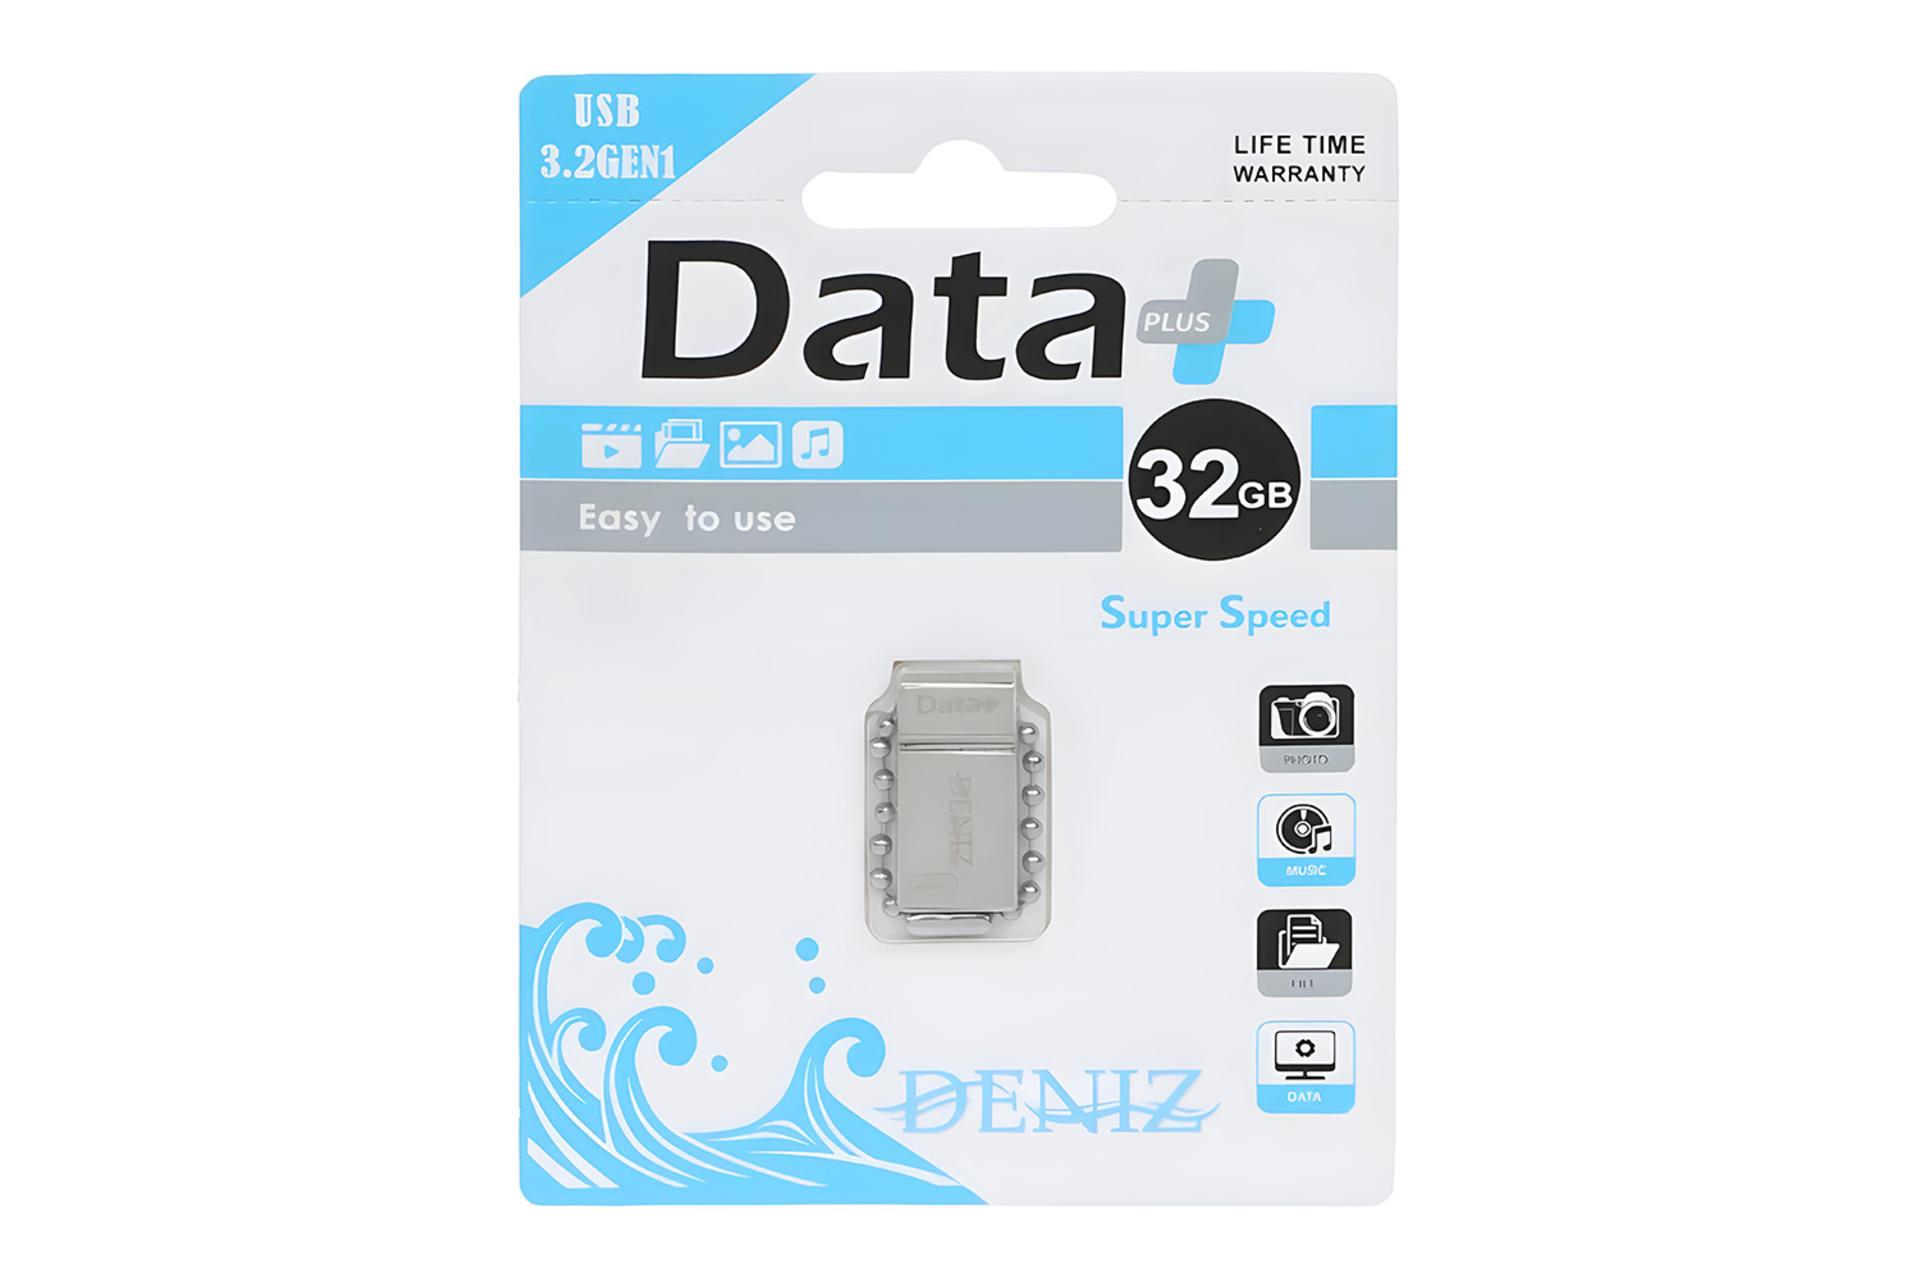 جعبه فلش مموری دیتاپلاس Data+ DENIZ 32GB USB 3.2